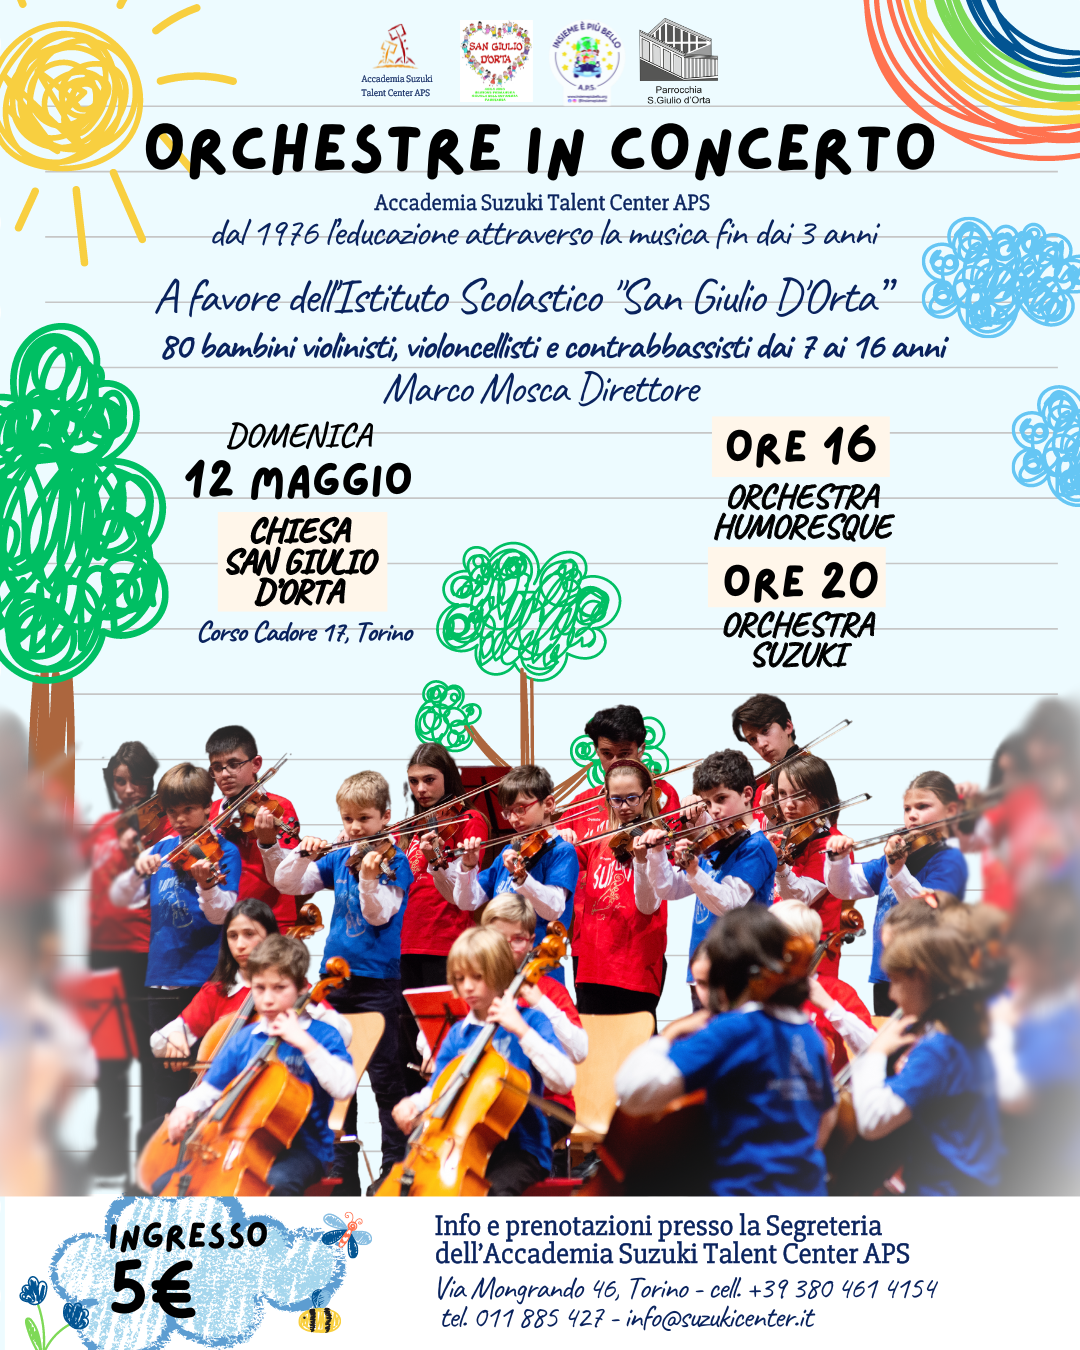 ORCHESTRE IN CONCERTO, il concerto delle Orchestre Humoresque e Suzuki a favore dell’Istituto Scolastico “San Giulio D’Orta”